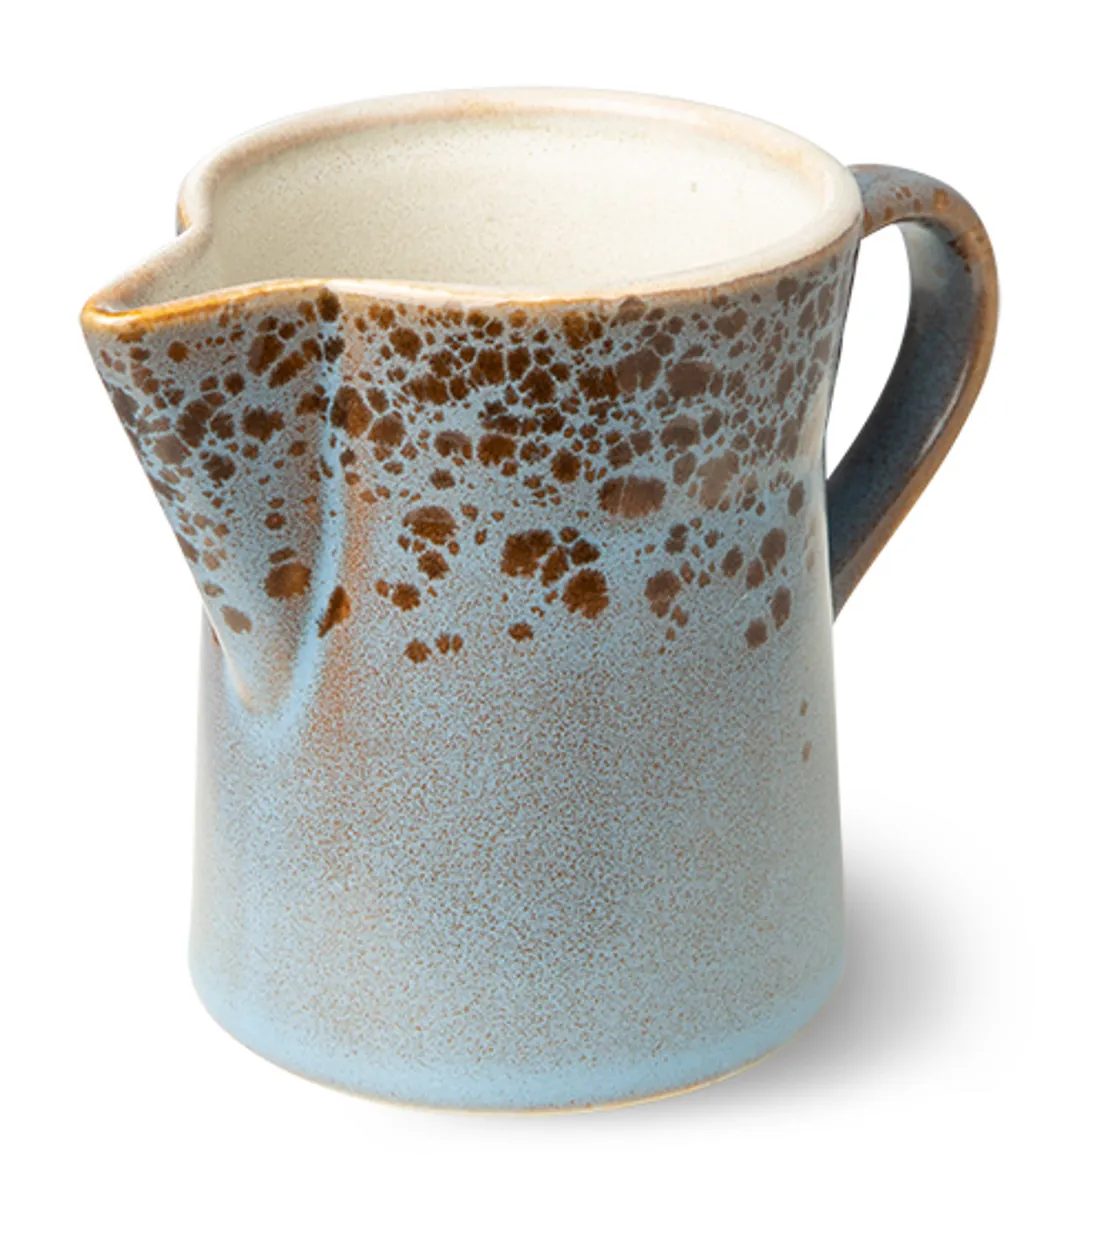 70s ceramics: milk jug & sugar pot, berry/peat